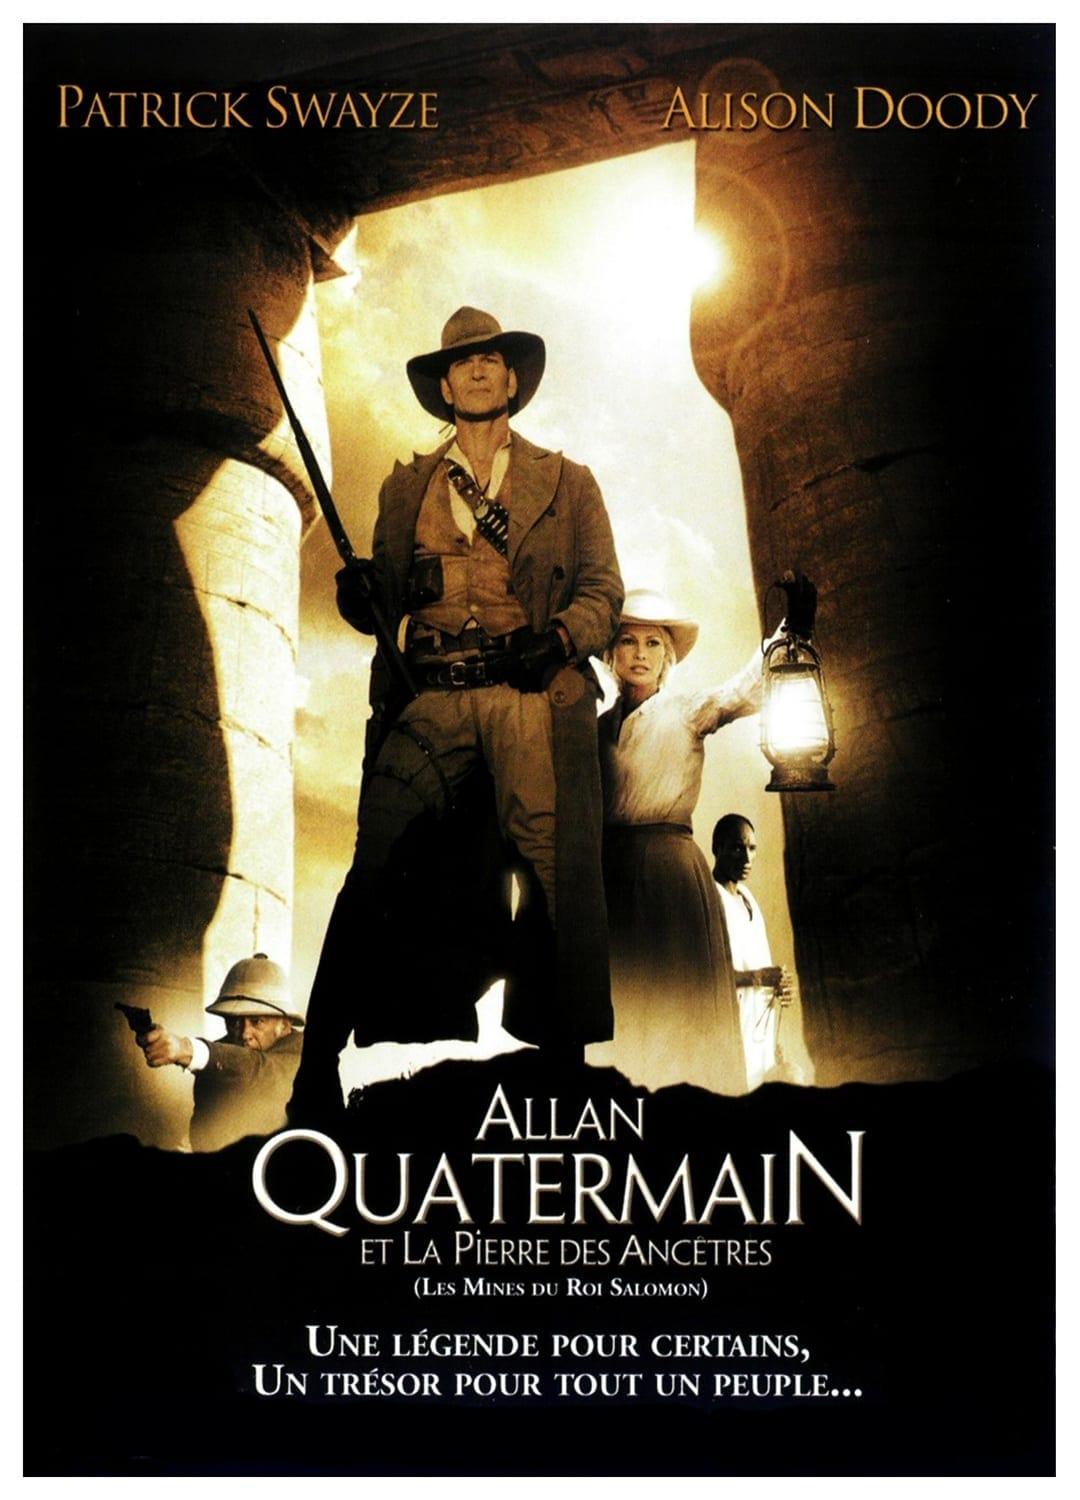 Les saisons de Allan Quatermain et la pierre des ancêtres sont-elles disponibles sur Netflix ou autre ?